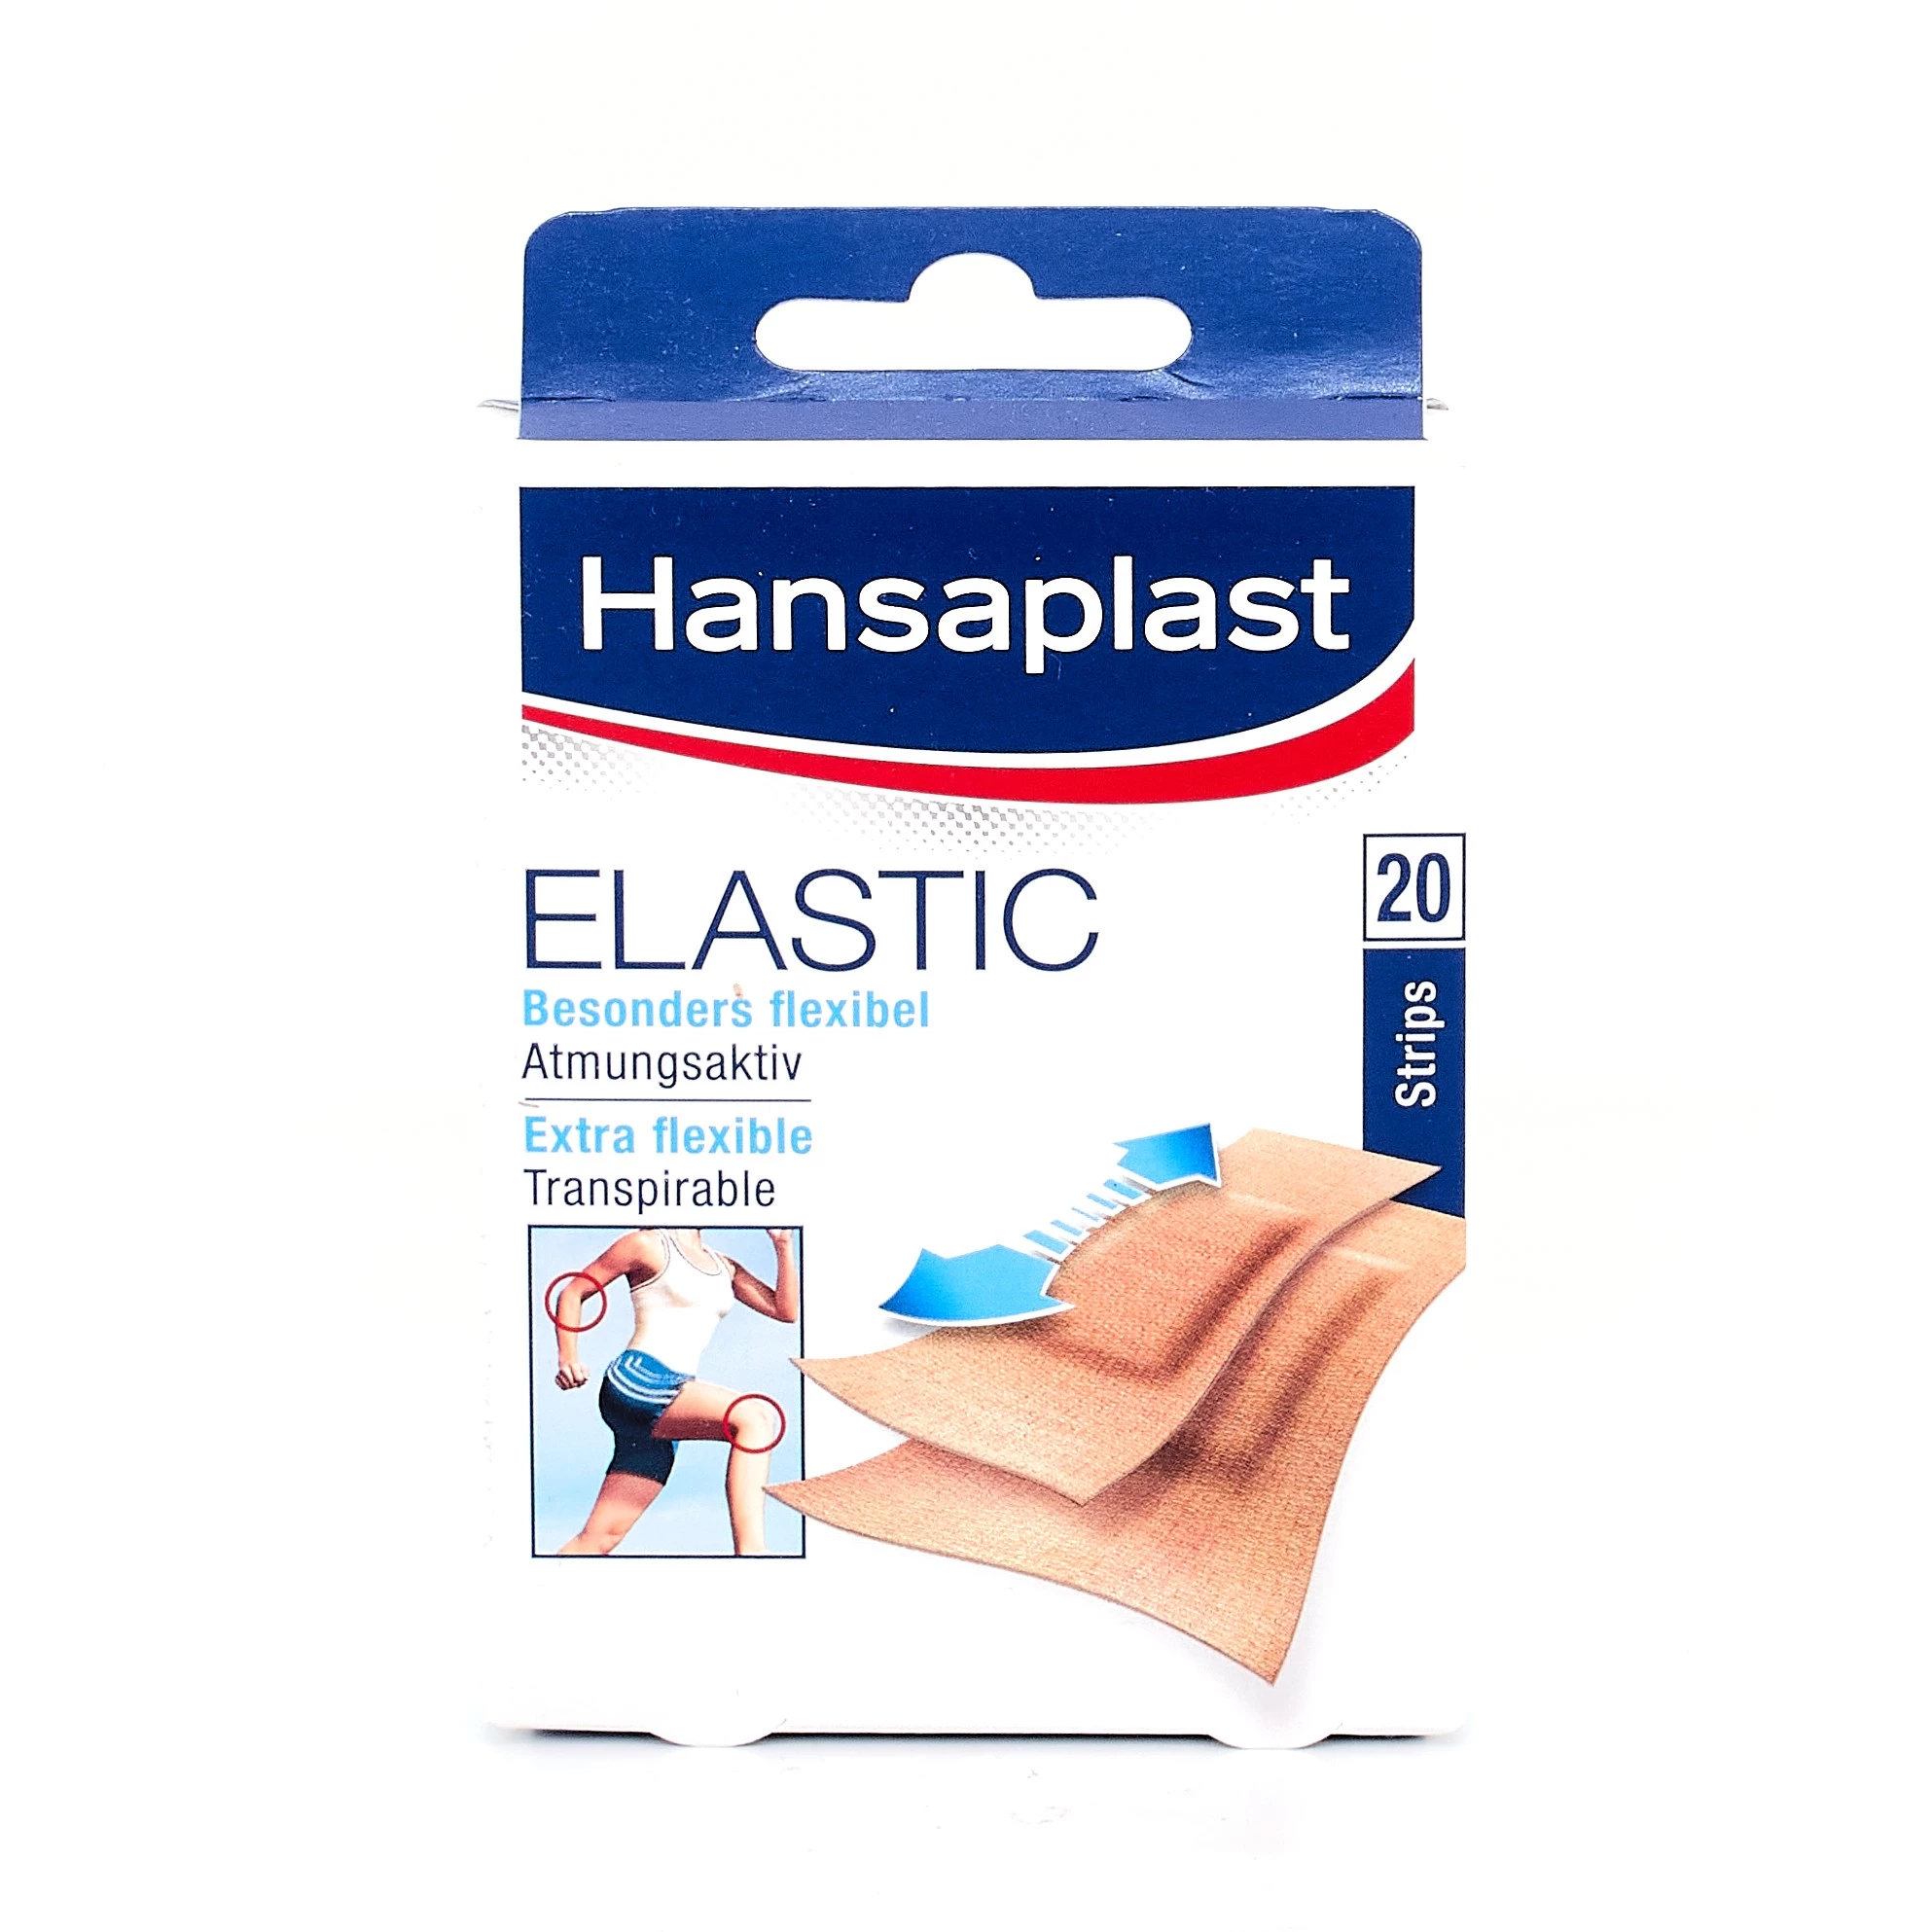 Hansaplast Elastic Antibacterial, 20Uds.